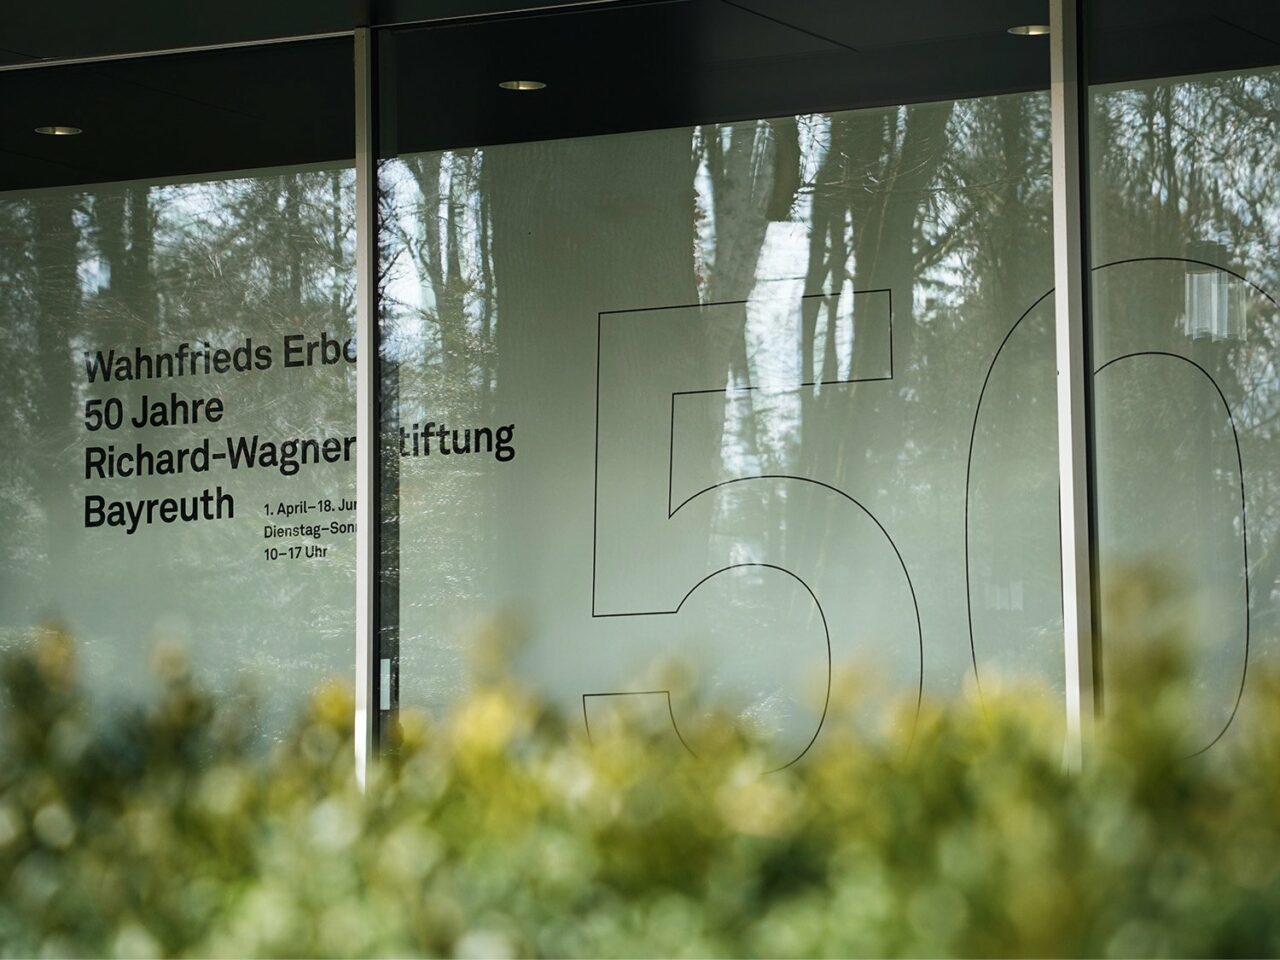 Corporate Design Case: Ausstellung 50 Jahre Richard-Wagner-Stiftung Bayreuth. Das Bild zeigt den Blick auf die Museumswand mit dem Museumstitel Wahnfrieds Erbe 50 Jahre Richard-Wagner-Stiftung Bayreuth